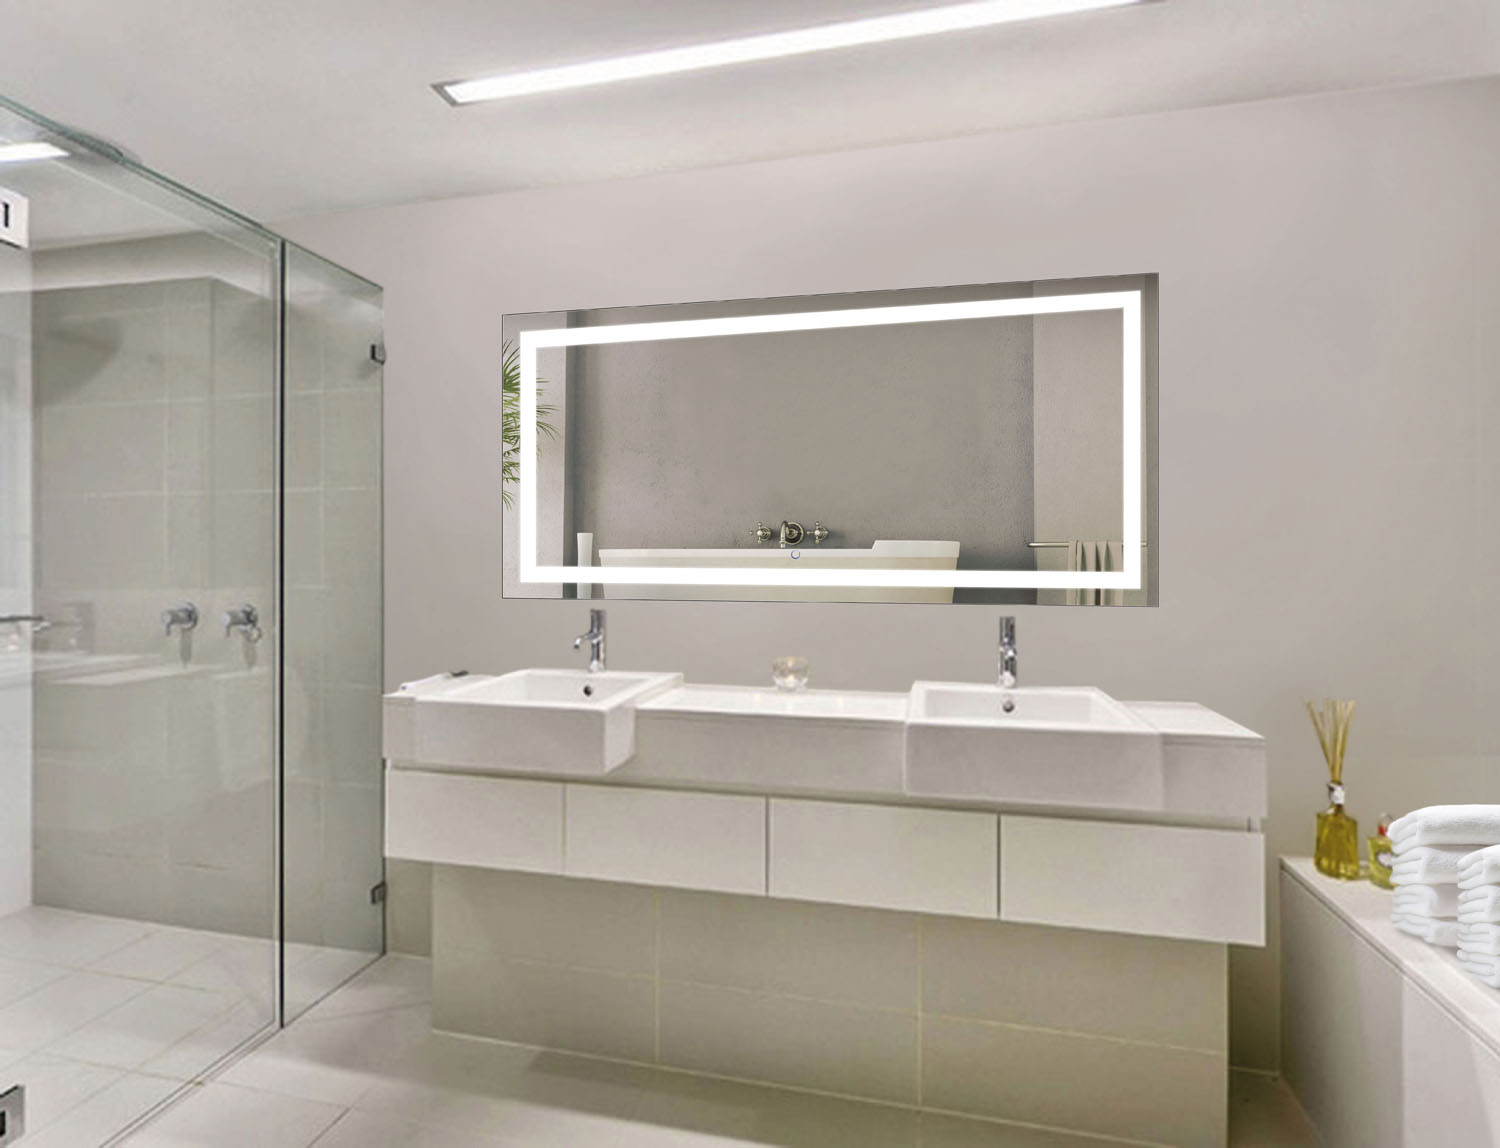 Bathroom Mirrors Over Vanity Brushed Metal